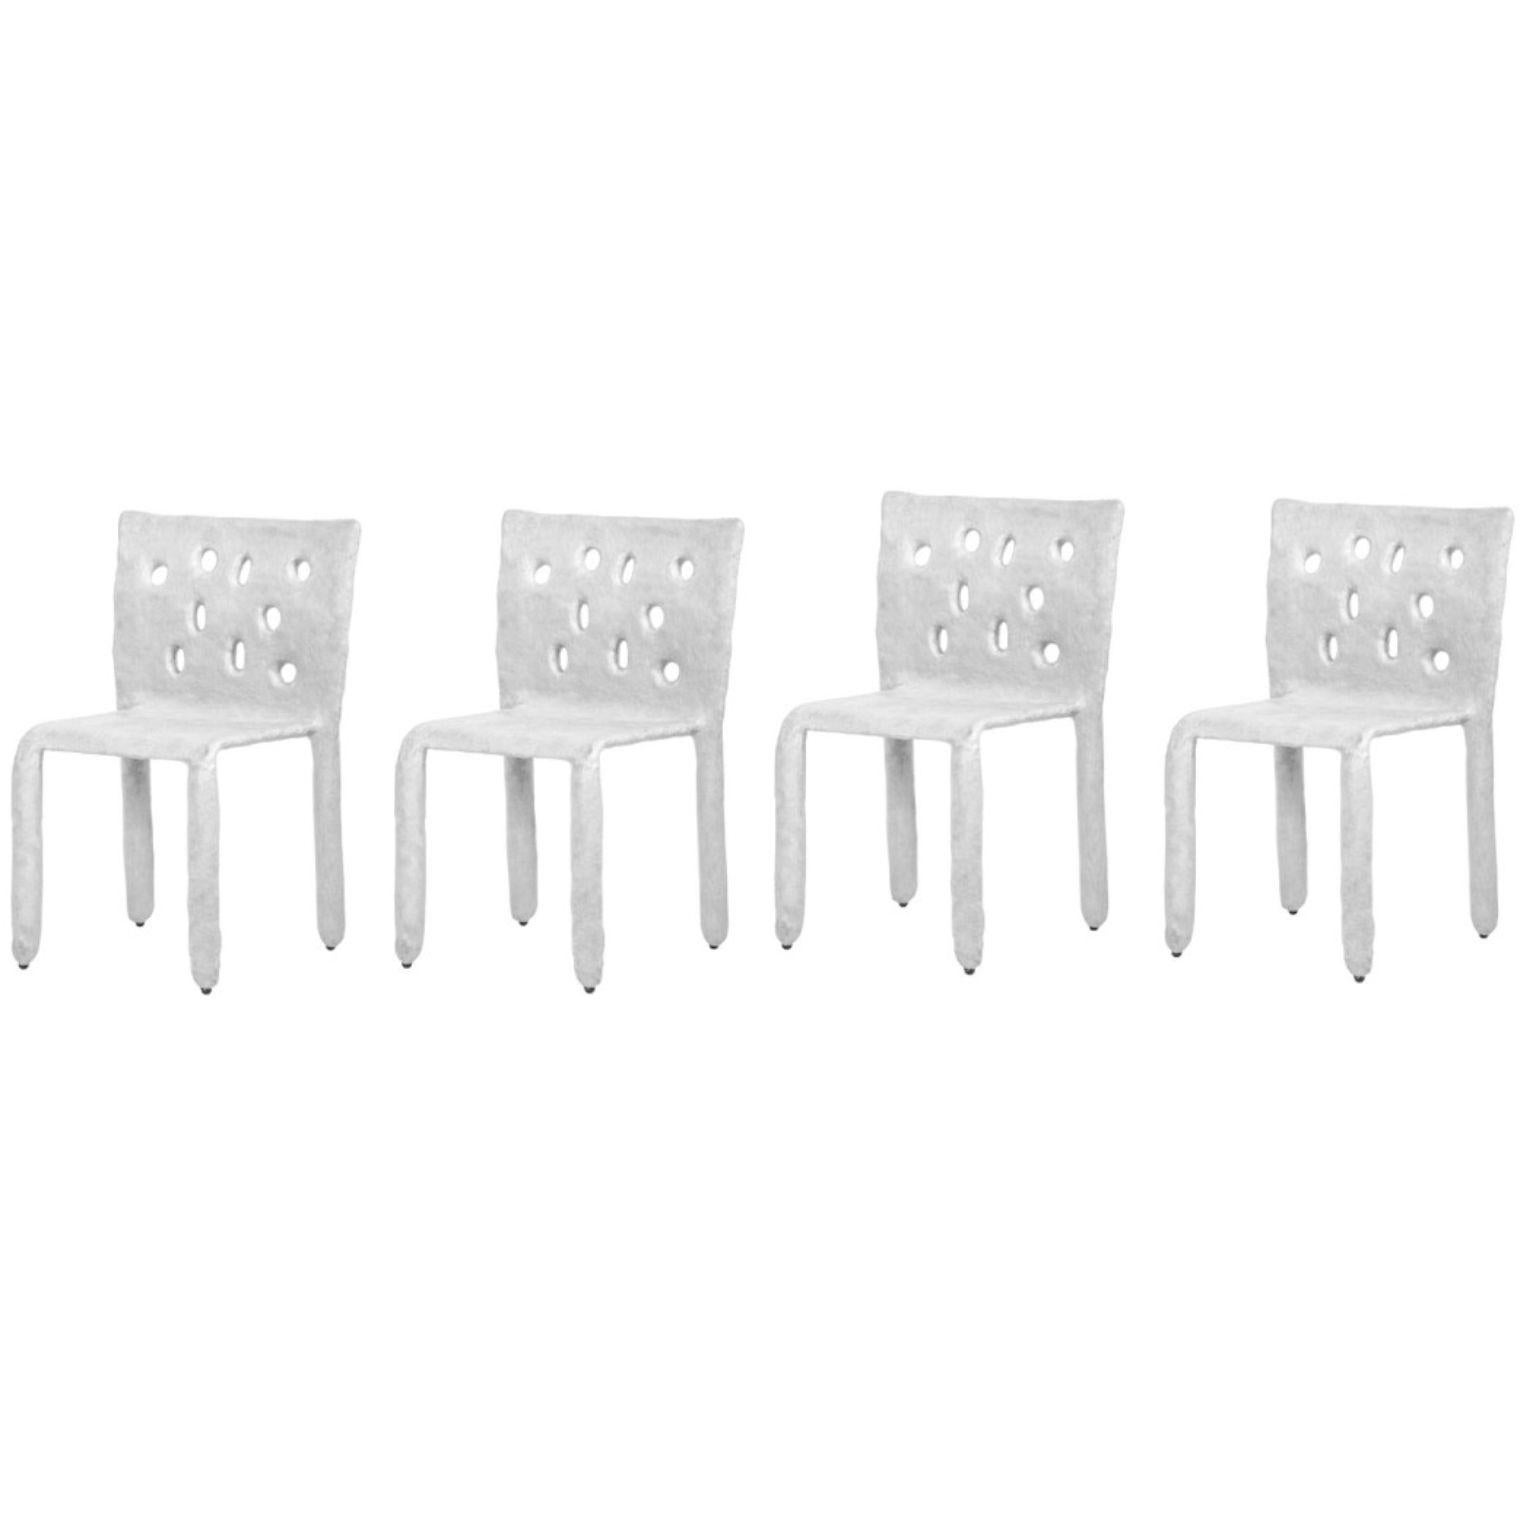 Ensemble de 4 chaises blanches sculptées et contemporaines de FAINA
Design : Victoriya Yakusha
MATERIAL : acier, caoutchouc de lin, biopolymère, cellulose.
Dimensions : Hauteur 82 x largeur 54 x profondeur des pieds 45 cm
 Poids : 15 kilos.

Conçus